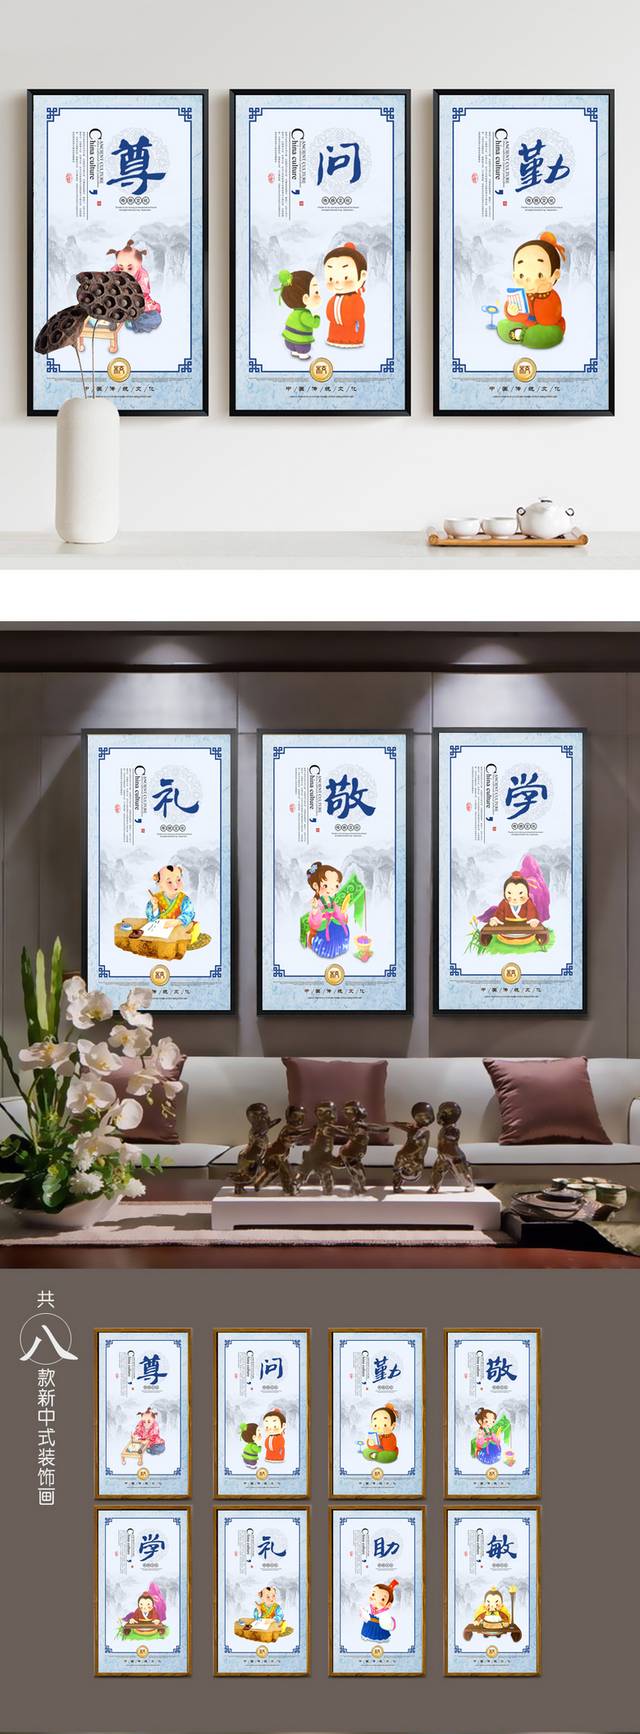 中国风传统校园文化海报设计